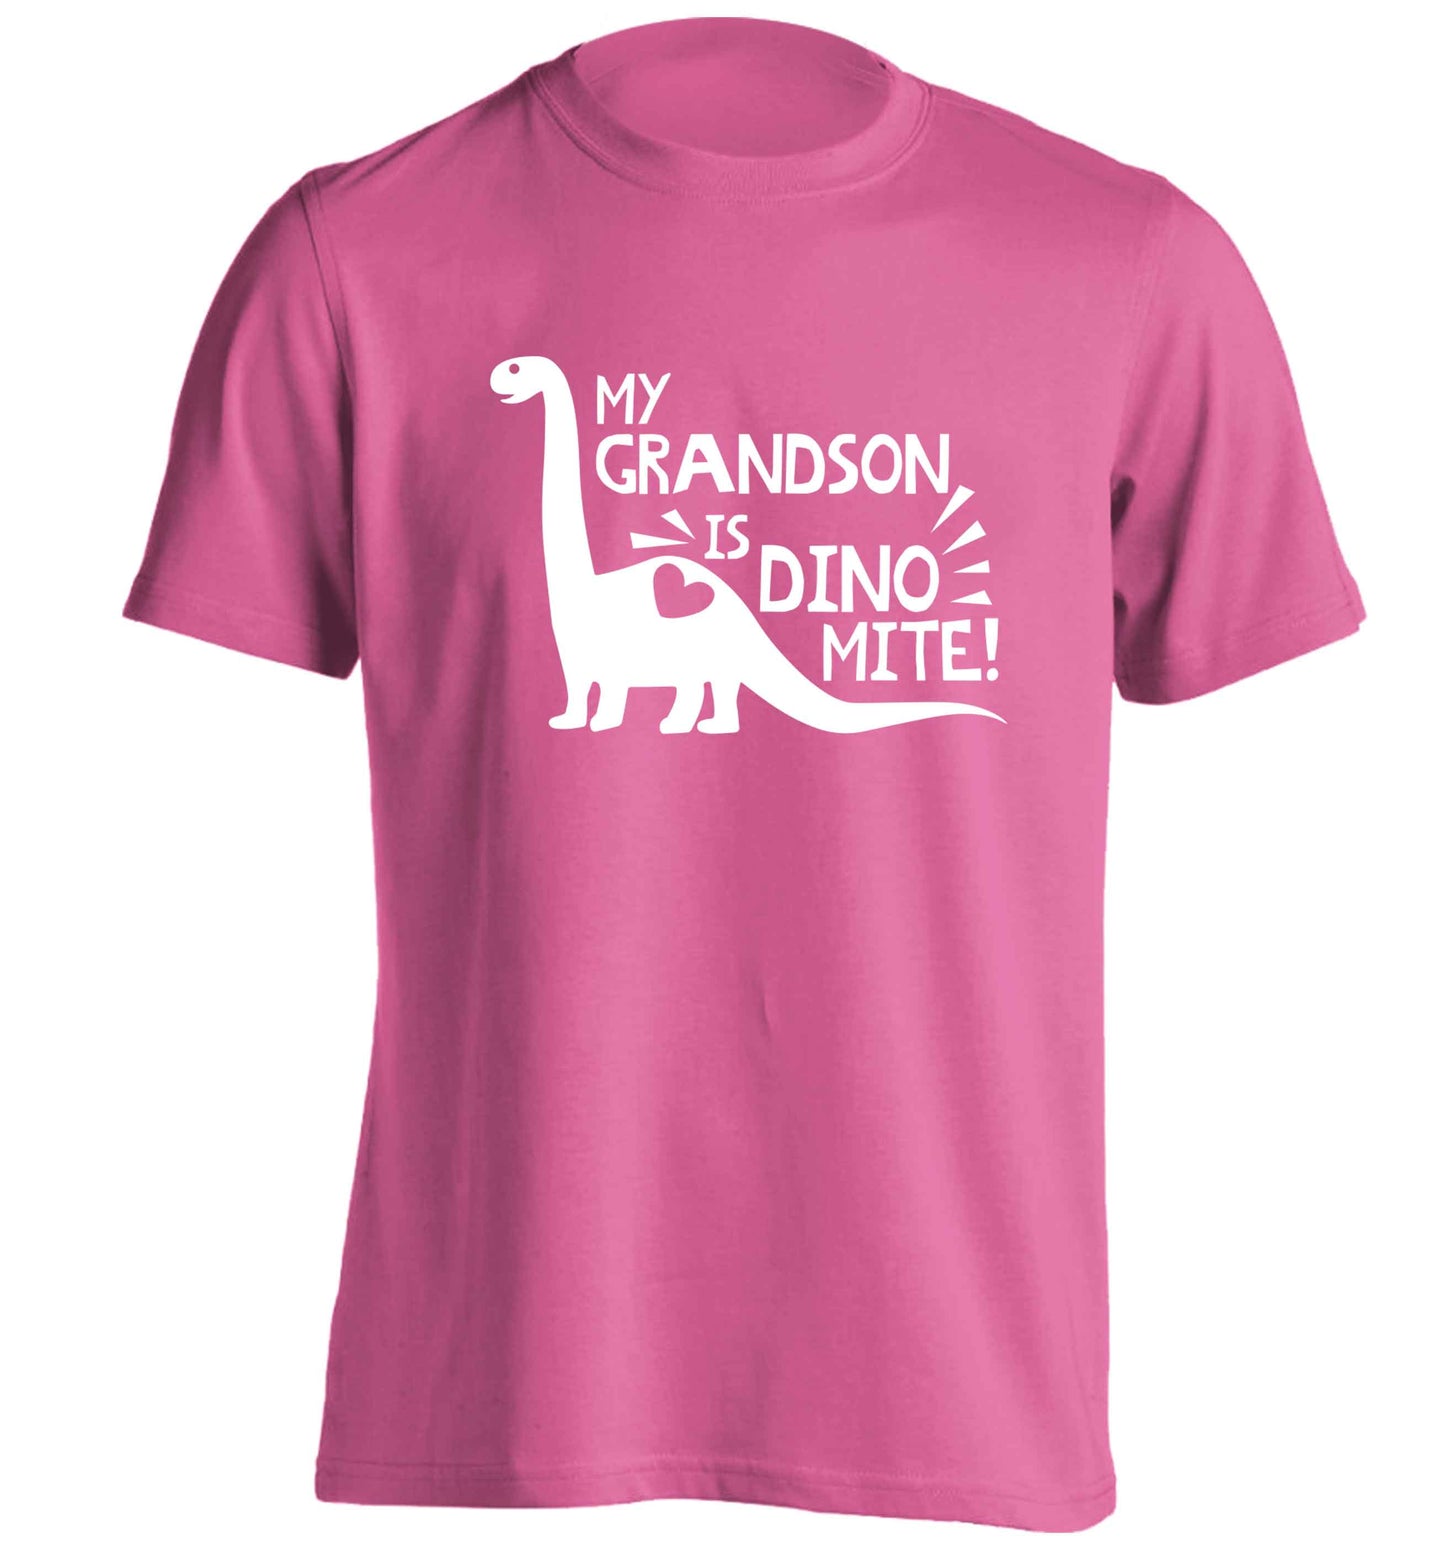 My grandson is dinomite! adults unisex pink Tshirt 2XL